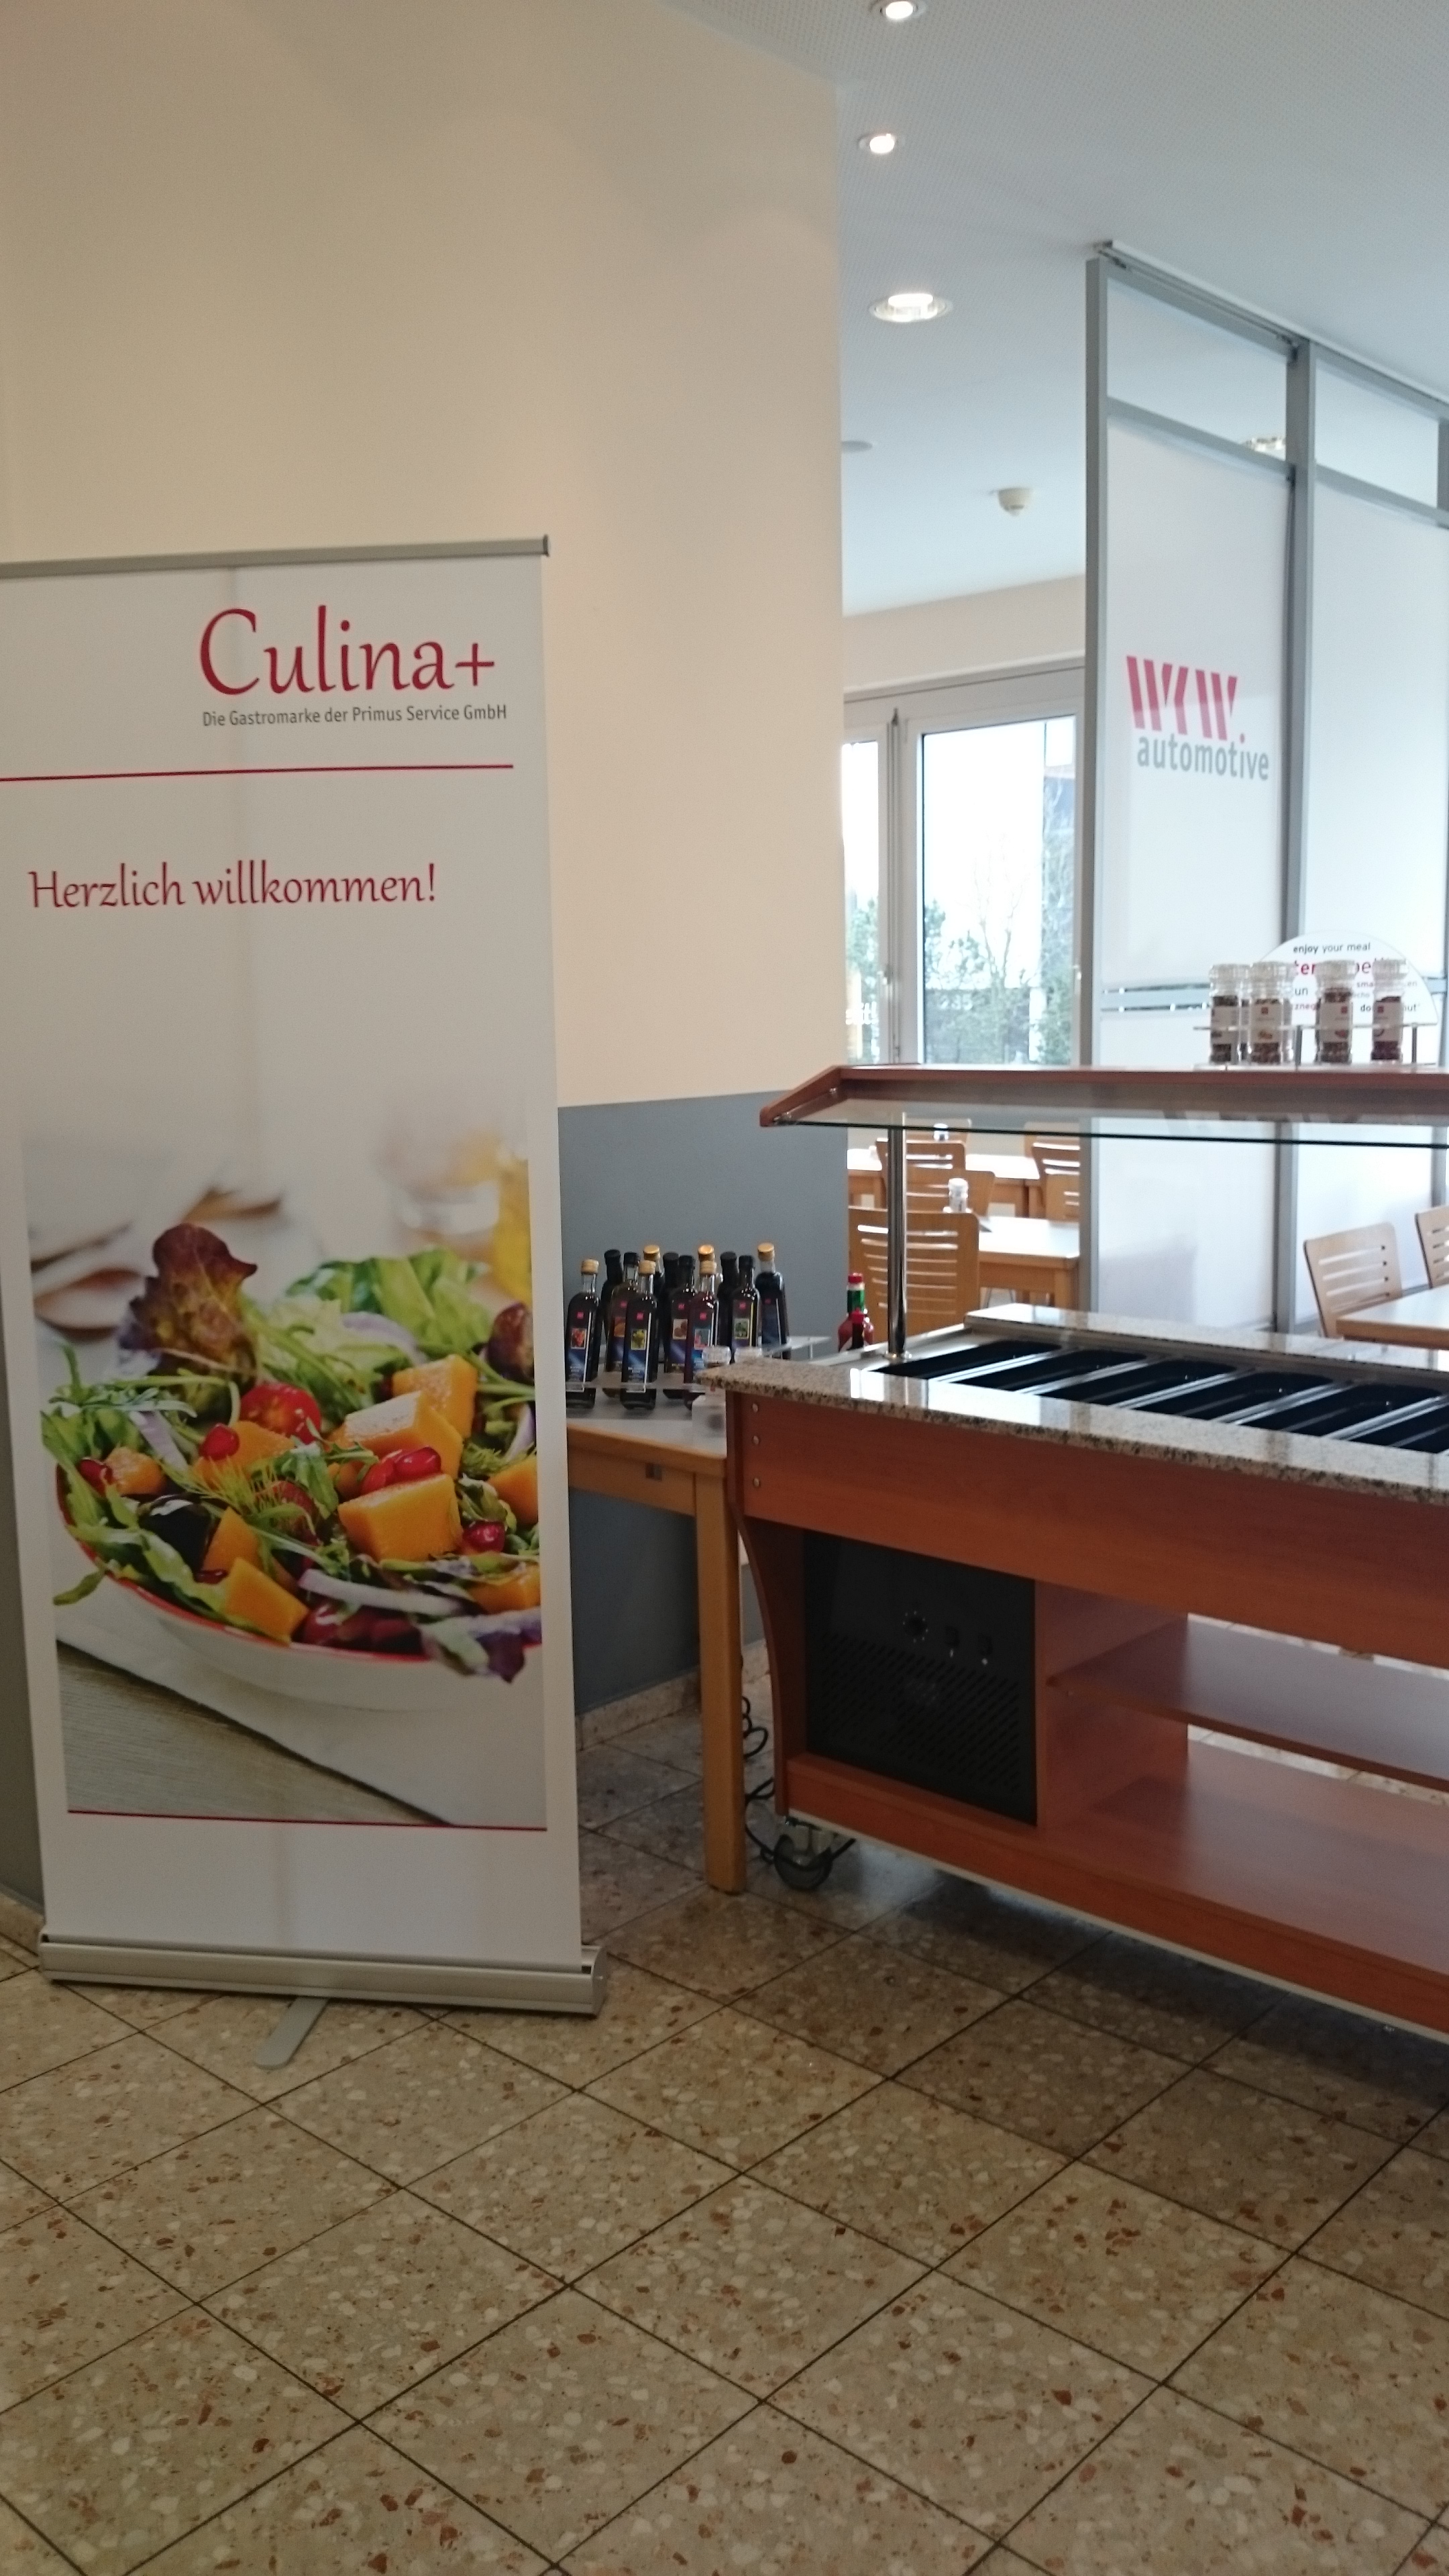 Das neue Betriebsrestaurant der Erbslöh. Foto: Primus Service